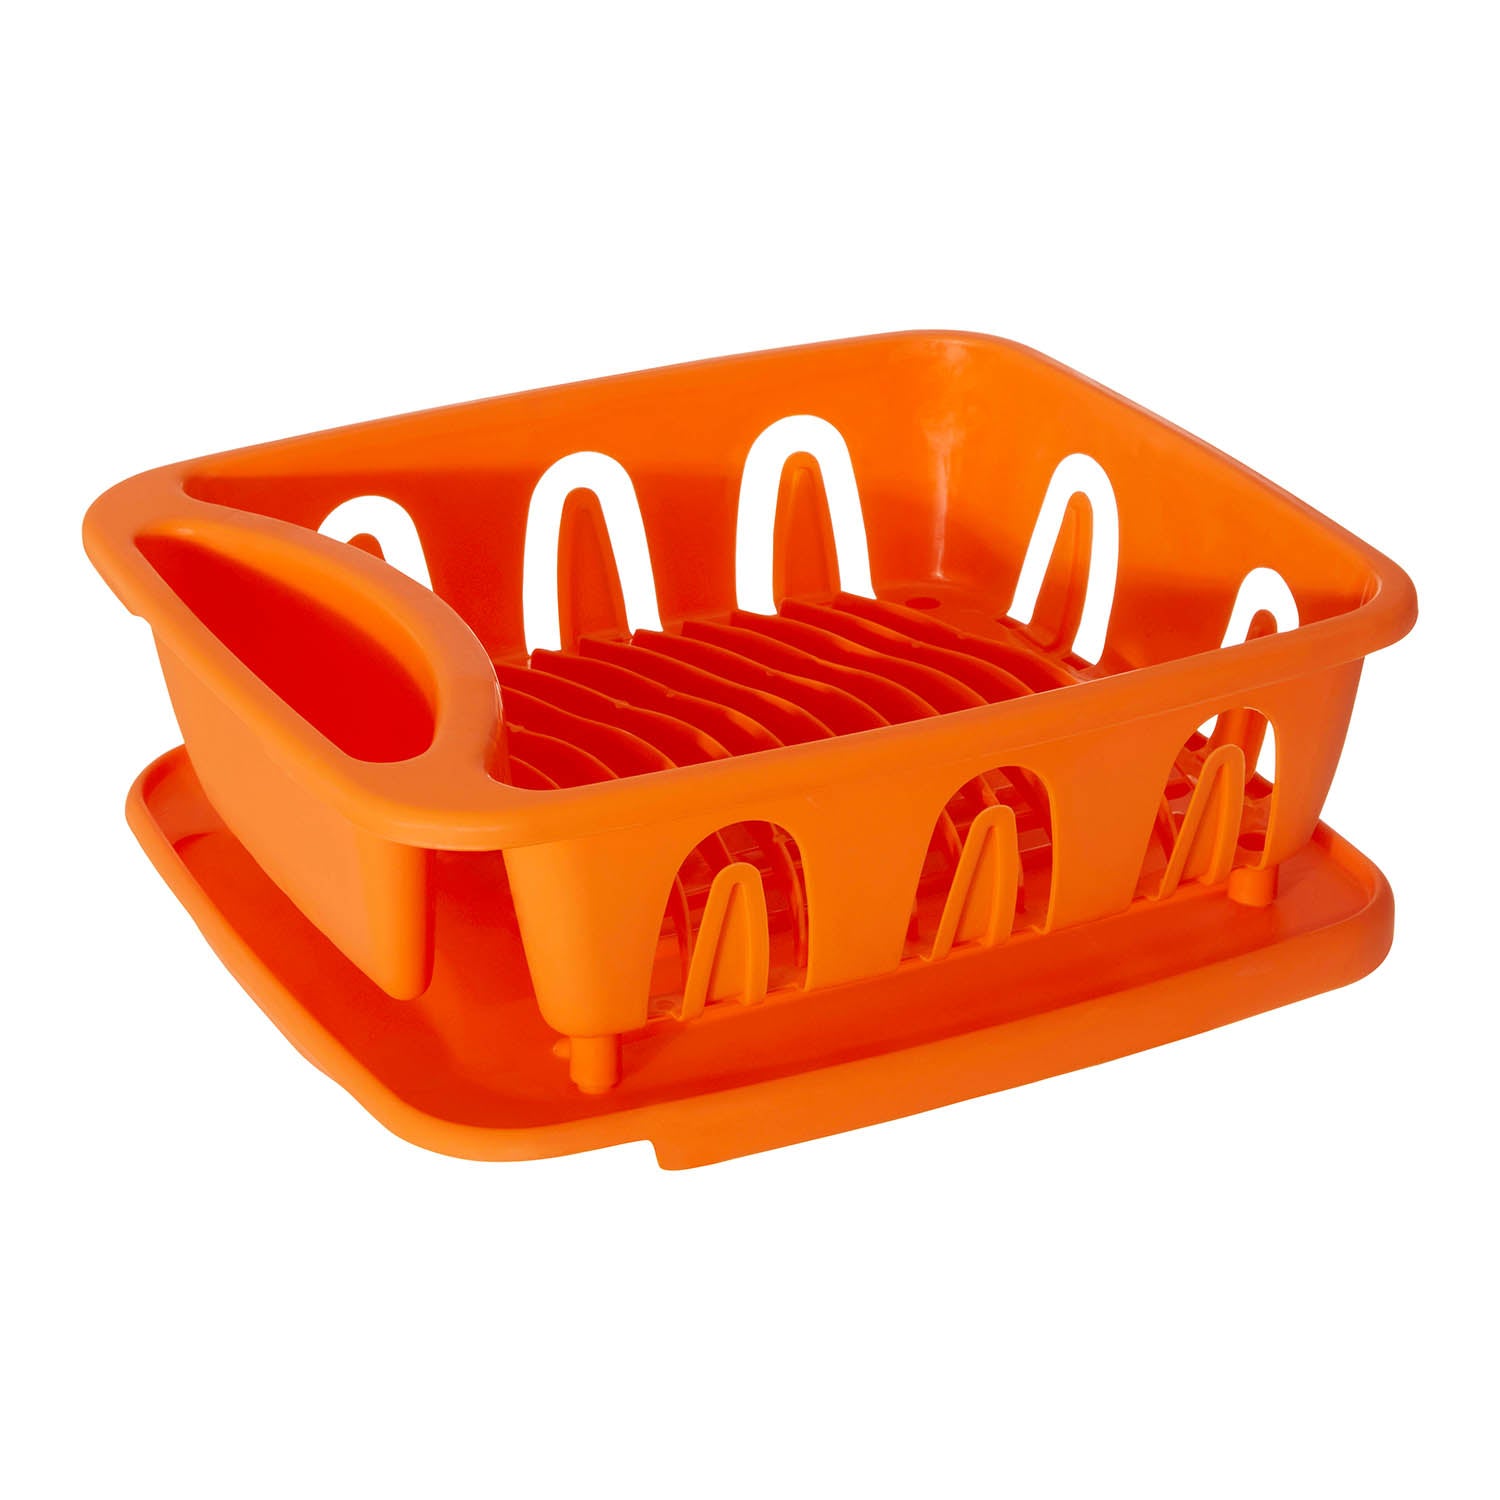 Plastic Orange Dish Drainer Plates Utensils Caddy